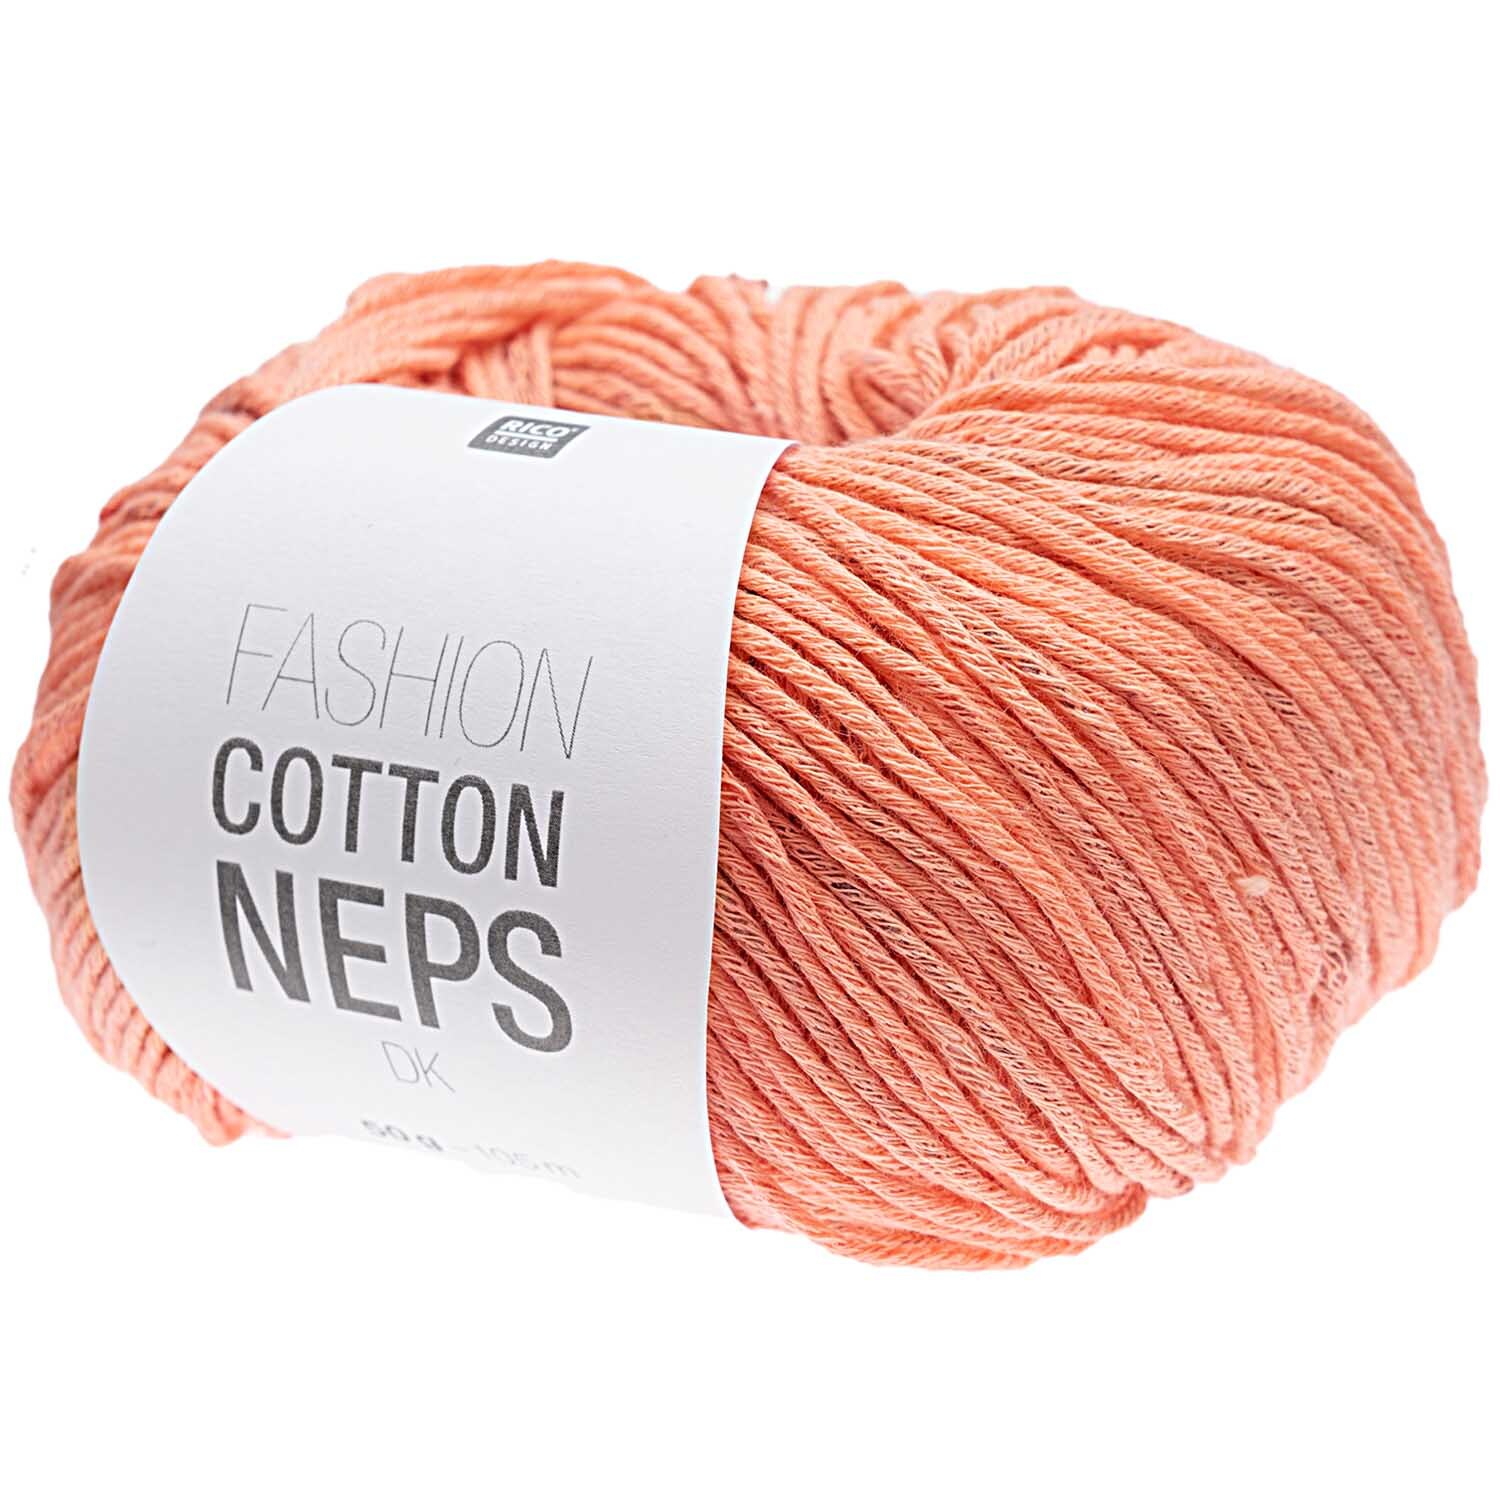 Fashion Cotton Neps dk